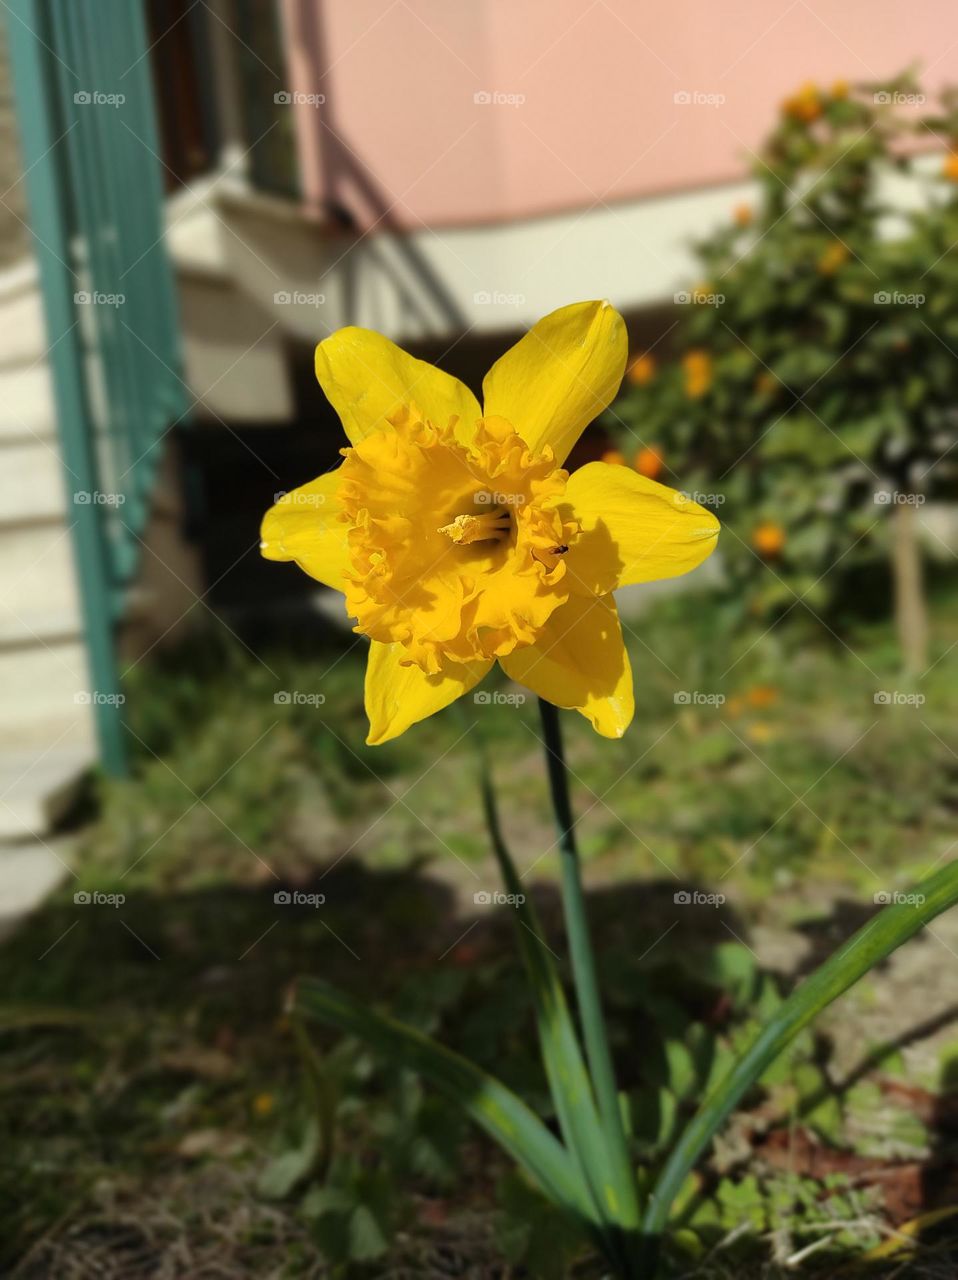 yellow daffodil in full bloom